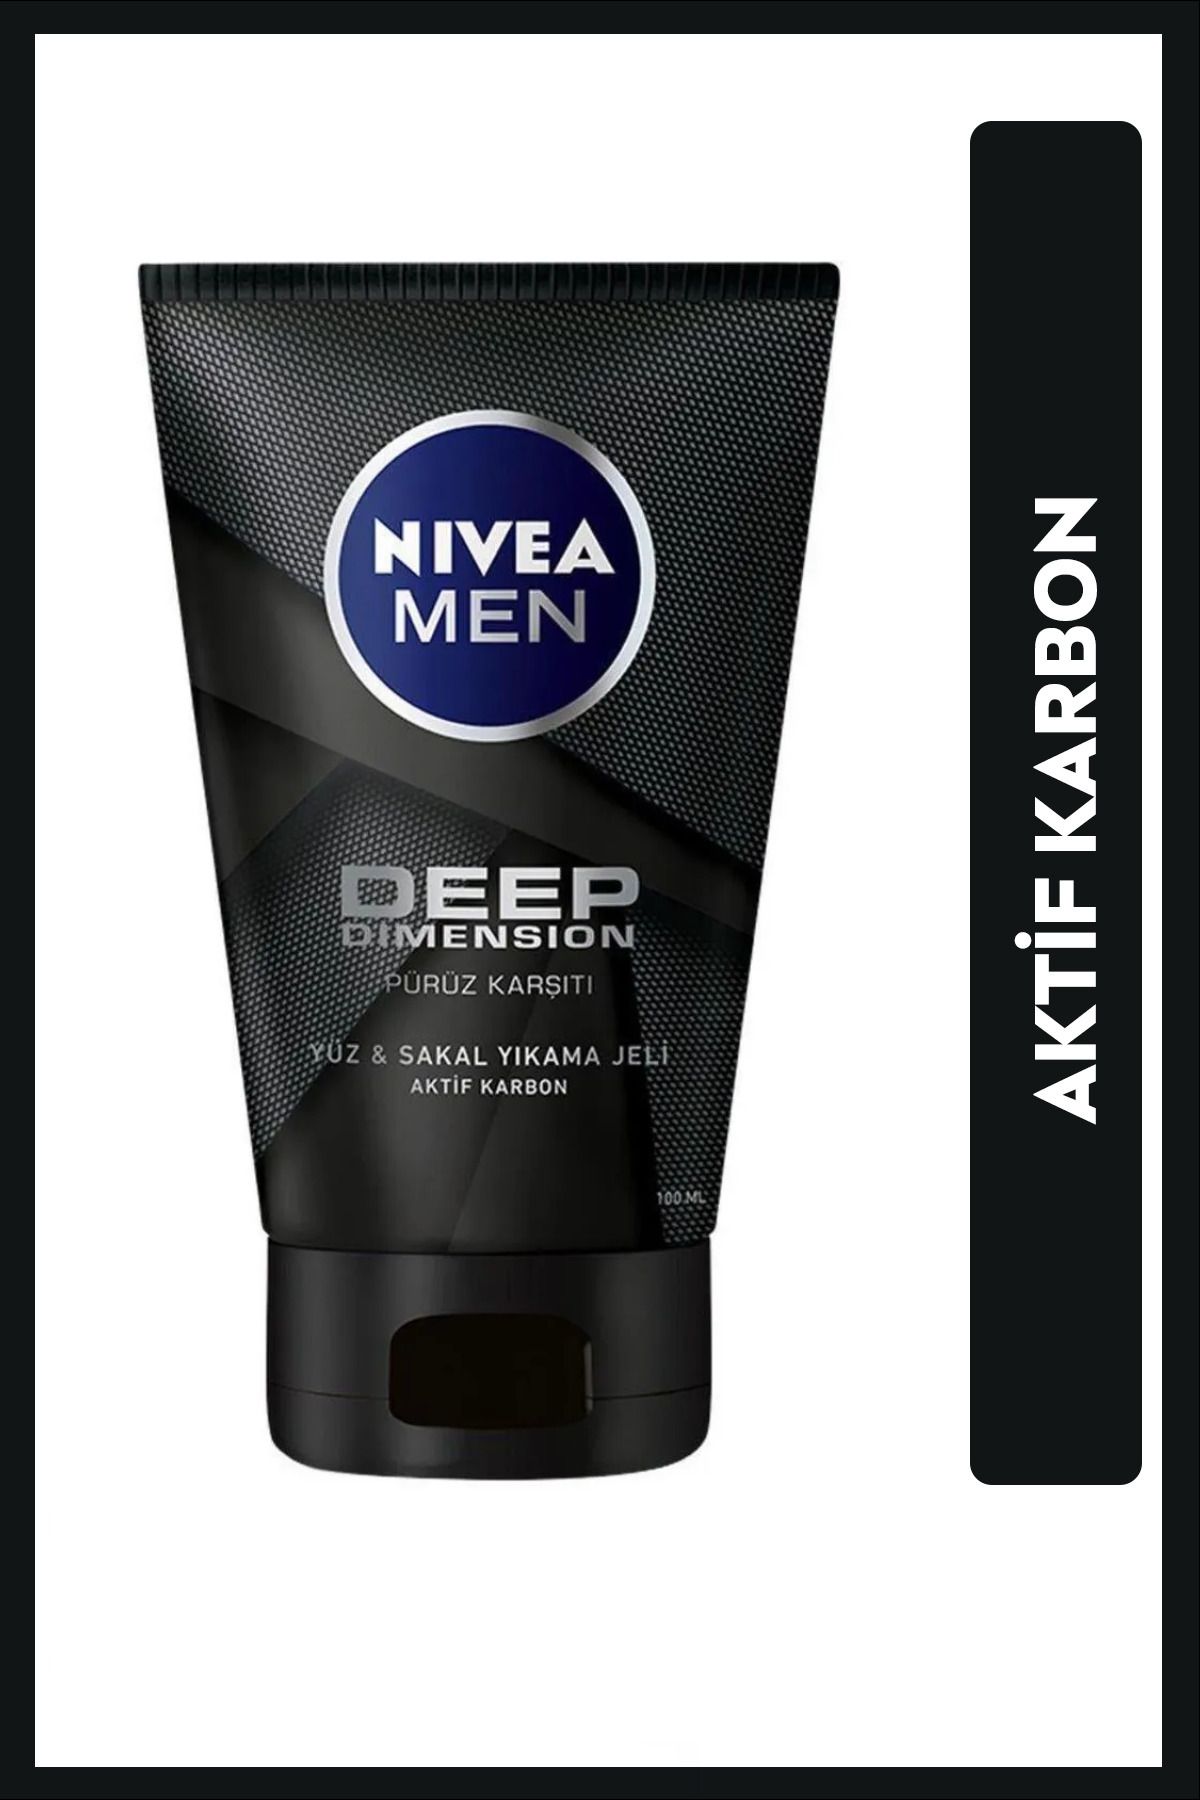 NIVEA MEN Erkek Yüz ve Sakal Temizleme Jeli Deep Dimension 100ml, Cilt Arındırıcı, Aktif Karbon